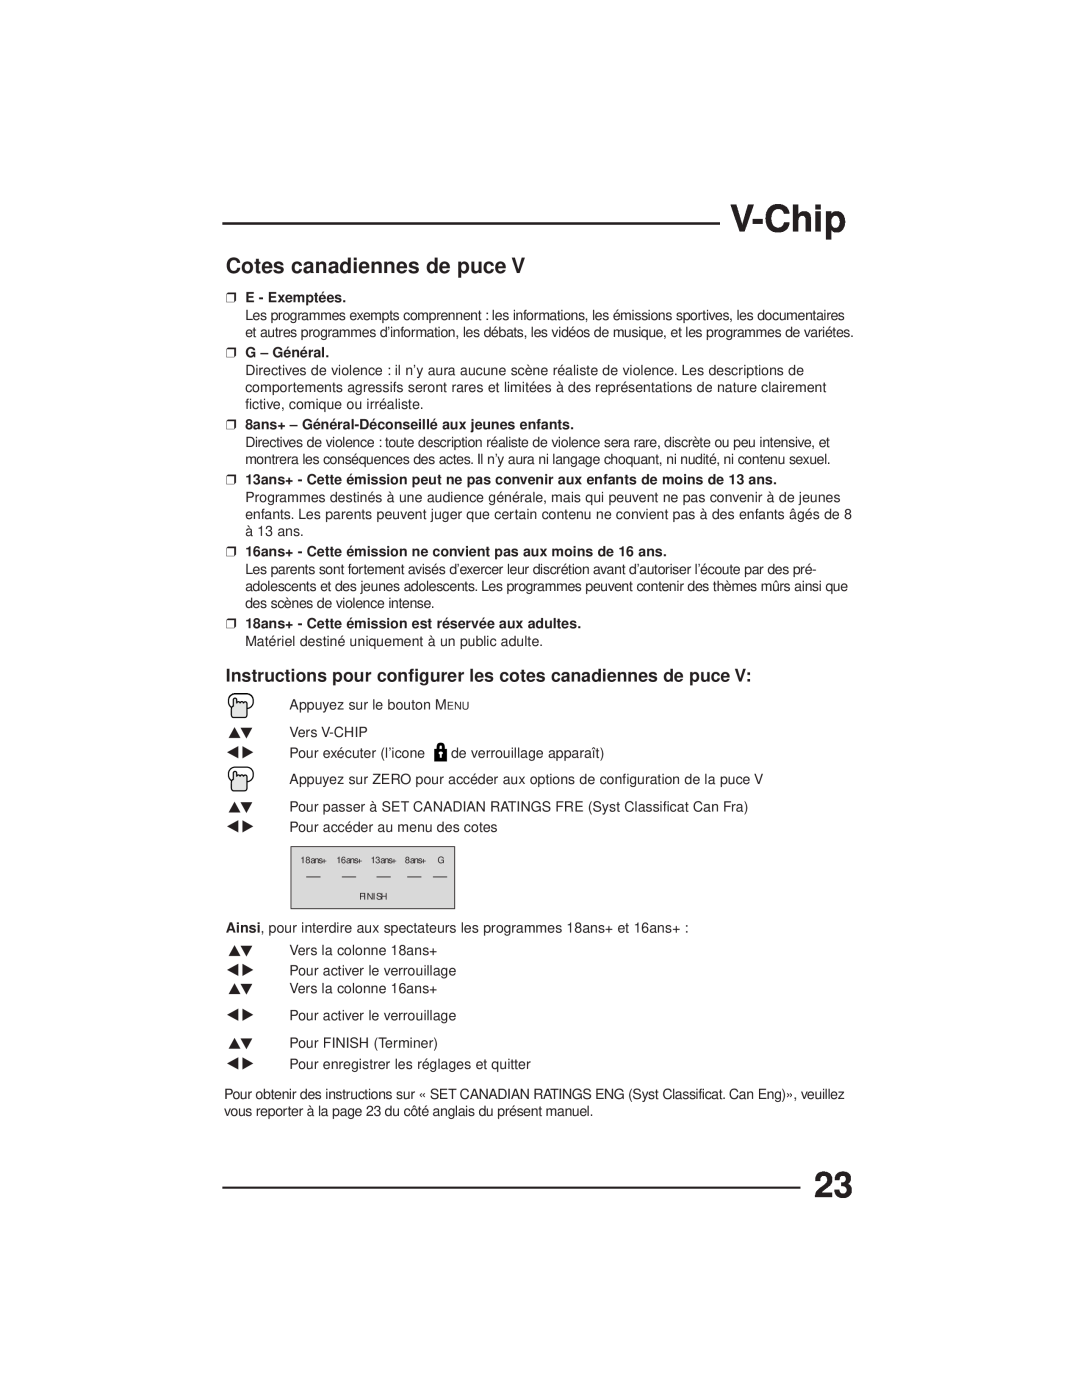 JVC AV-27GFH Cotes canadiennes de puce, V-Chip, Instructions pour configurer les cotes canadiennes de puce, E - Exemptées 